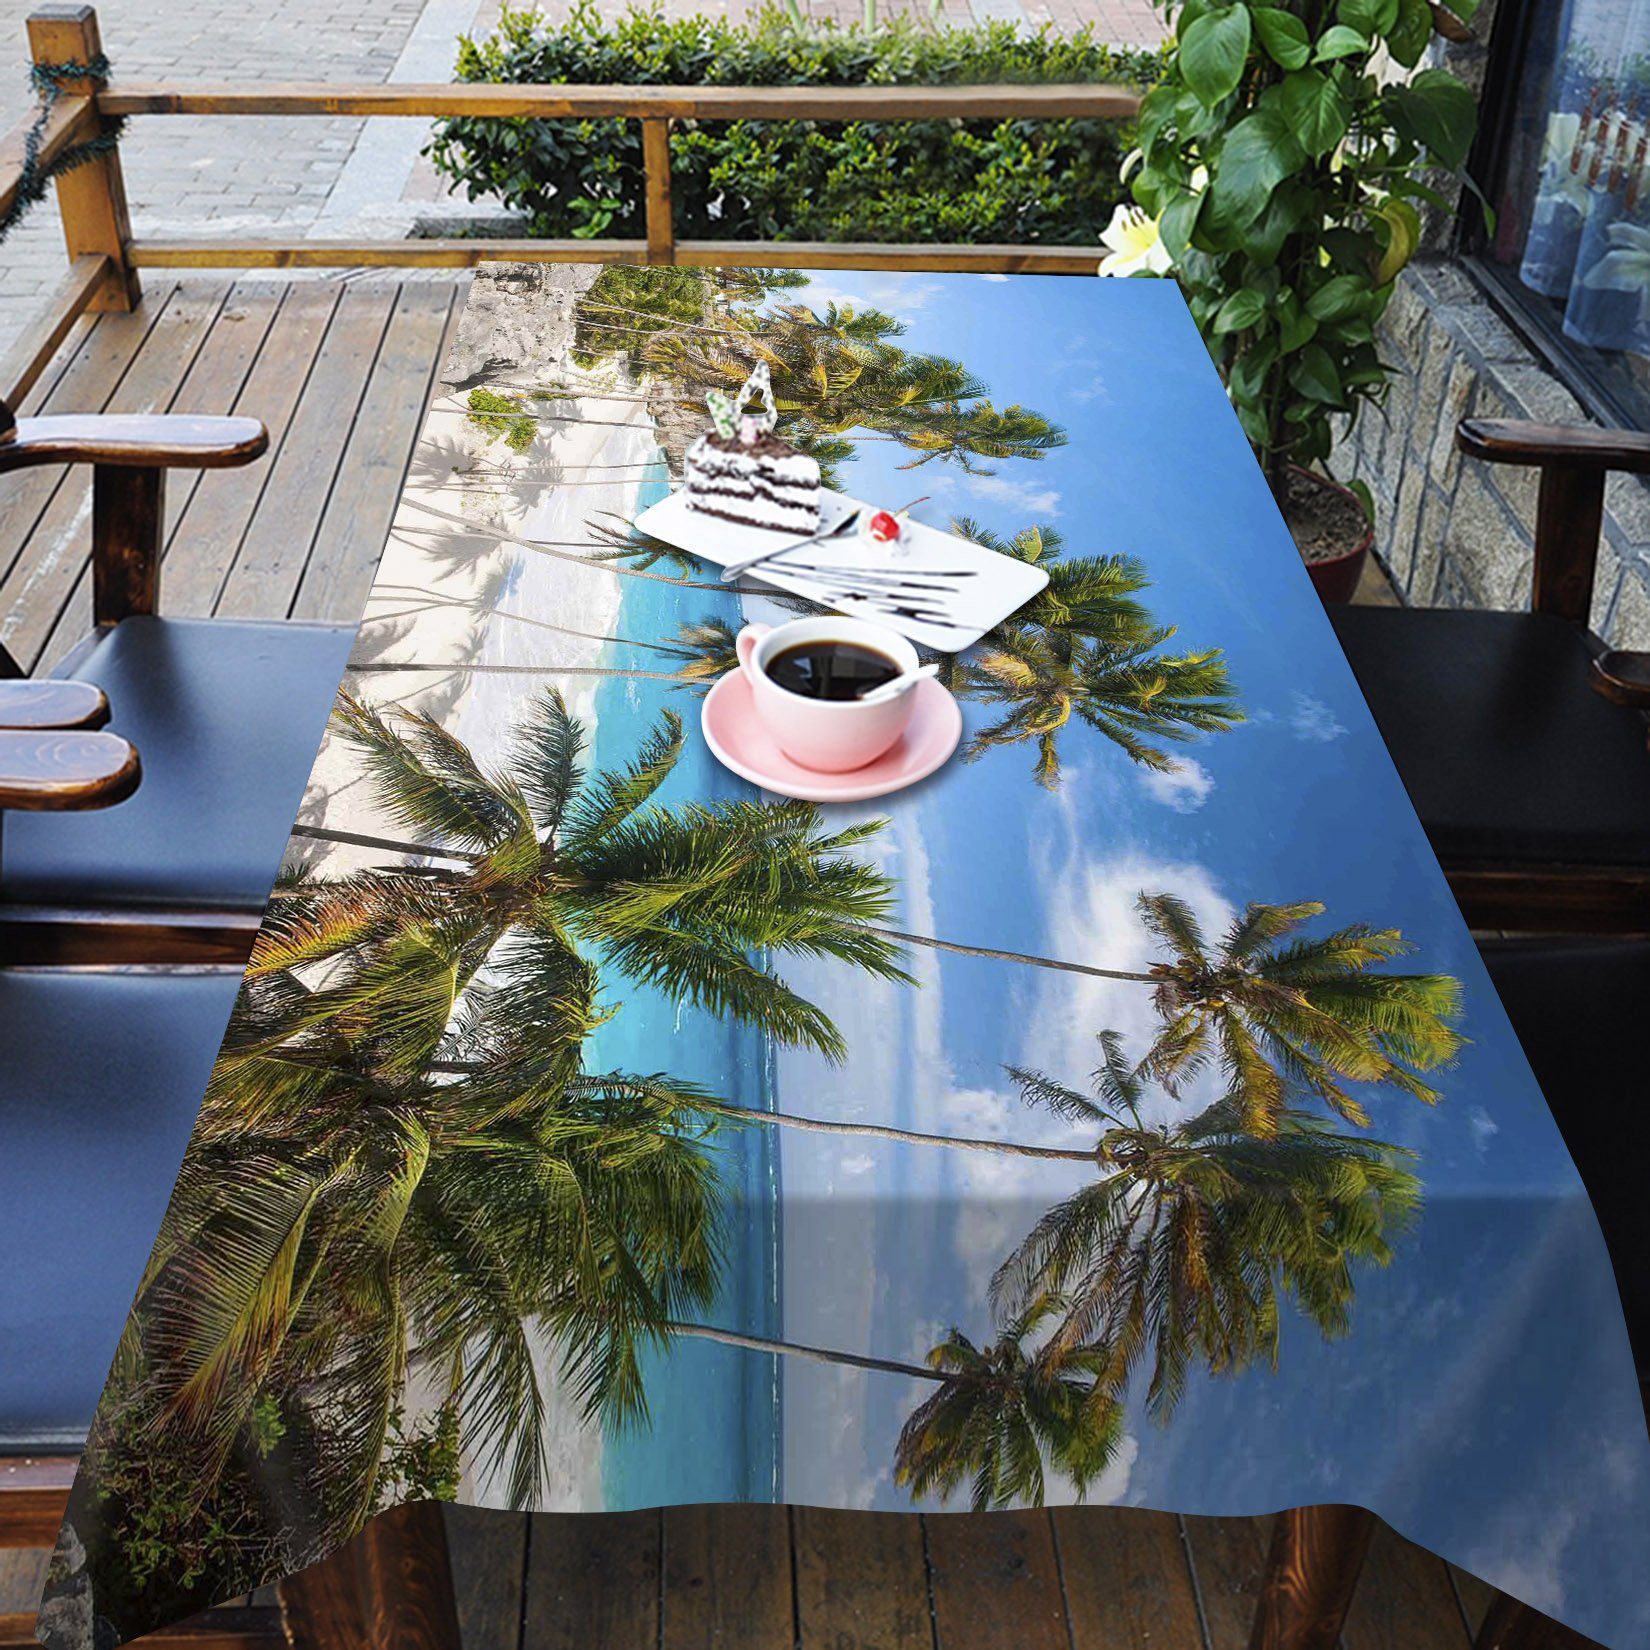 3D Beach Coconut Trees 58 Tablecloths Wallpaper AJ Wallpaper 